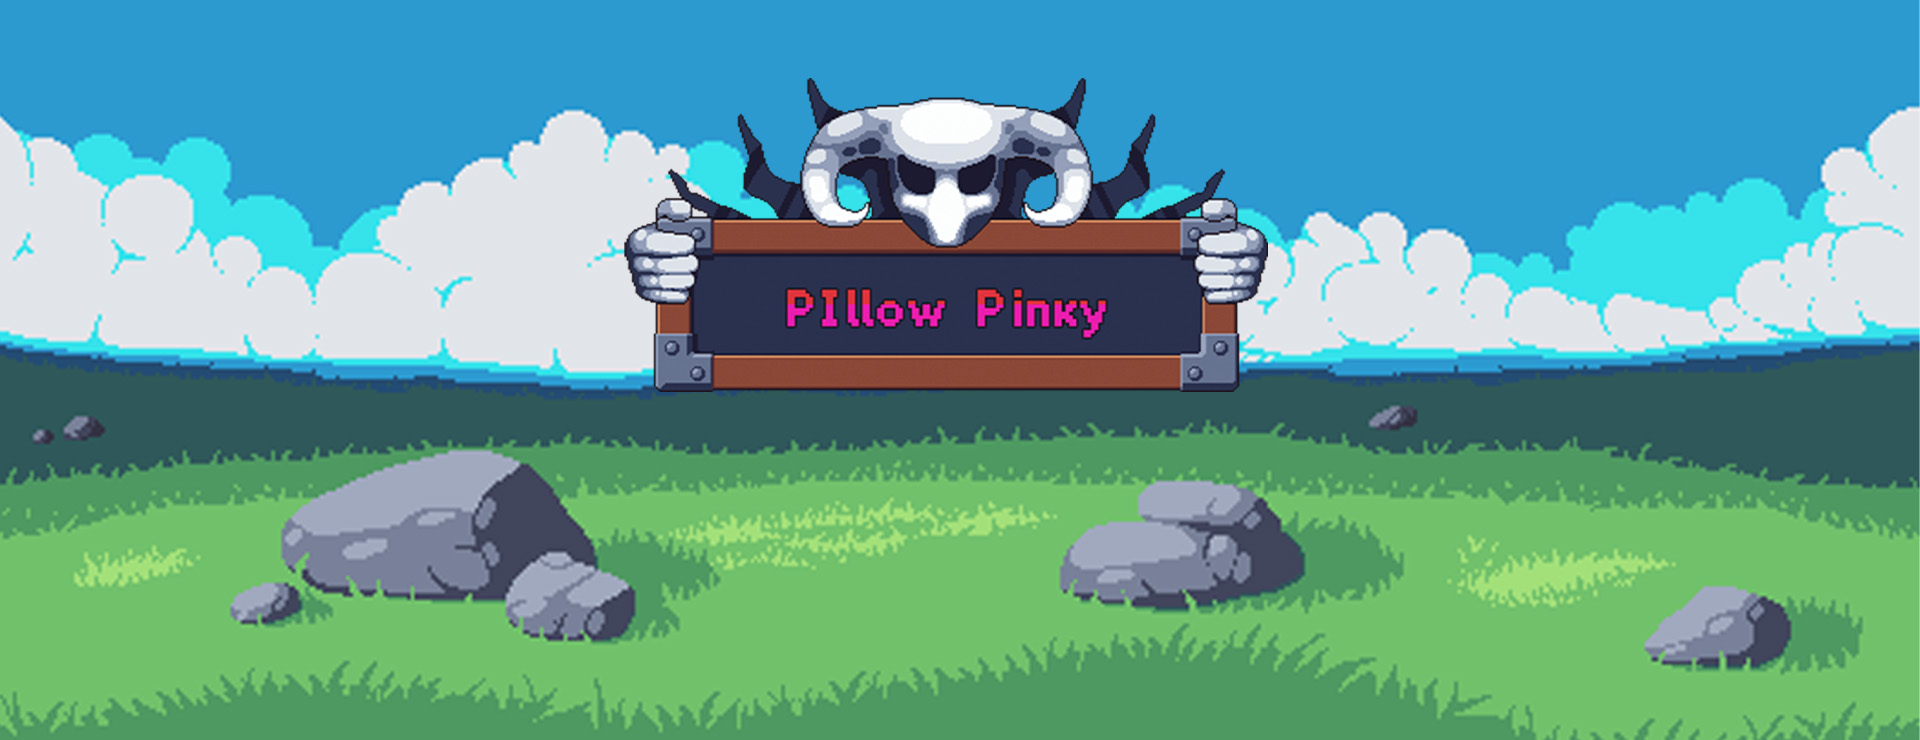 Pillow Pinky - Platformer Spiel